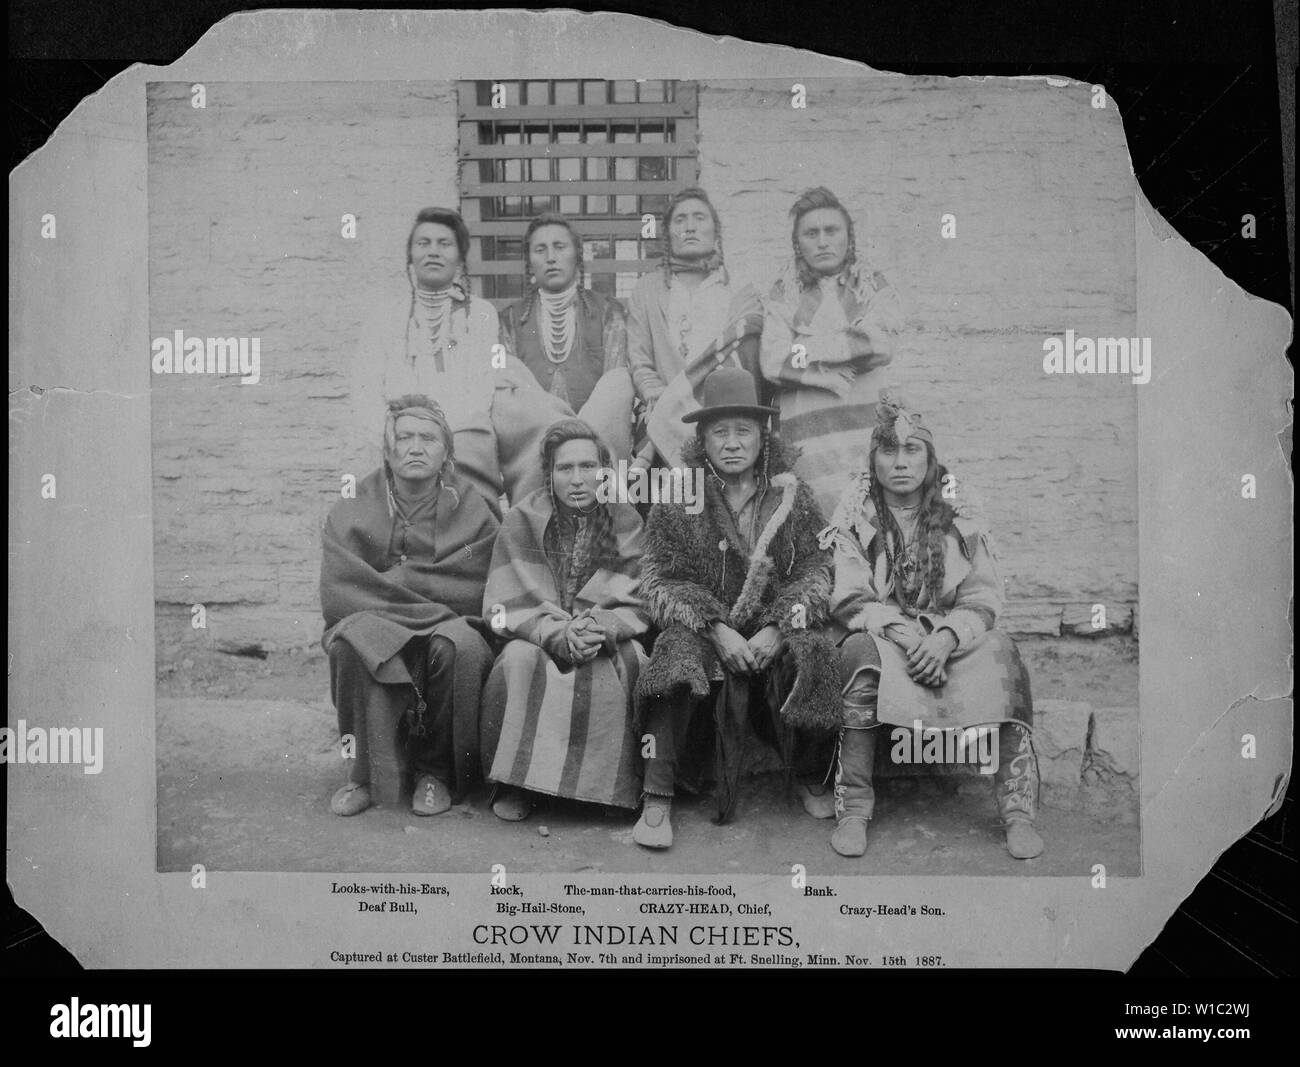 Los Jefes Indios Crow. Custer capturados en batalla, Montana, Nov7th y encarcelado en Ft. Snelling, Minn. 15 Nov 1887. [Crazy-Head, mira-con-su-oídos, Rock, The-Man-que-tiene-su-alimentos, banco, sordos, Bull Big-Hail-Piedra, y el hijo de Crazy-Head]. Foto de stock